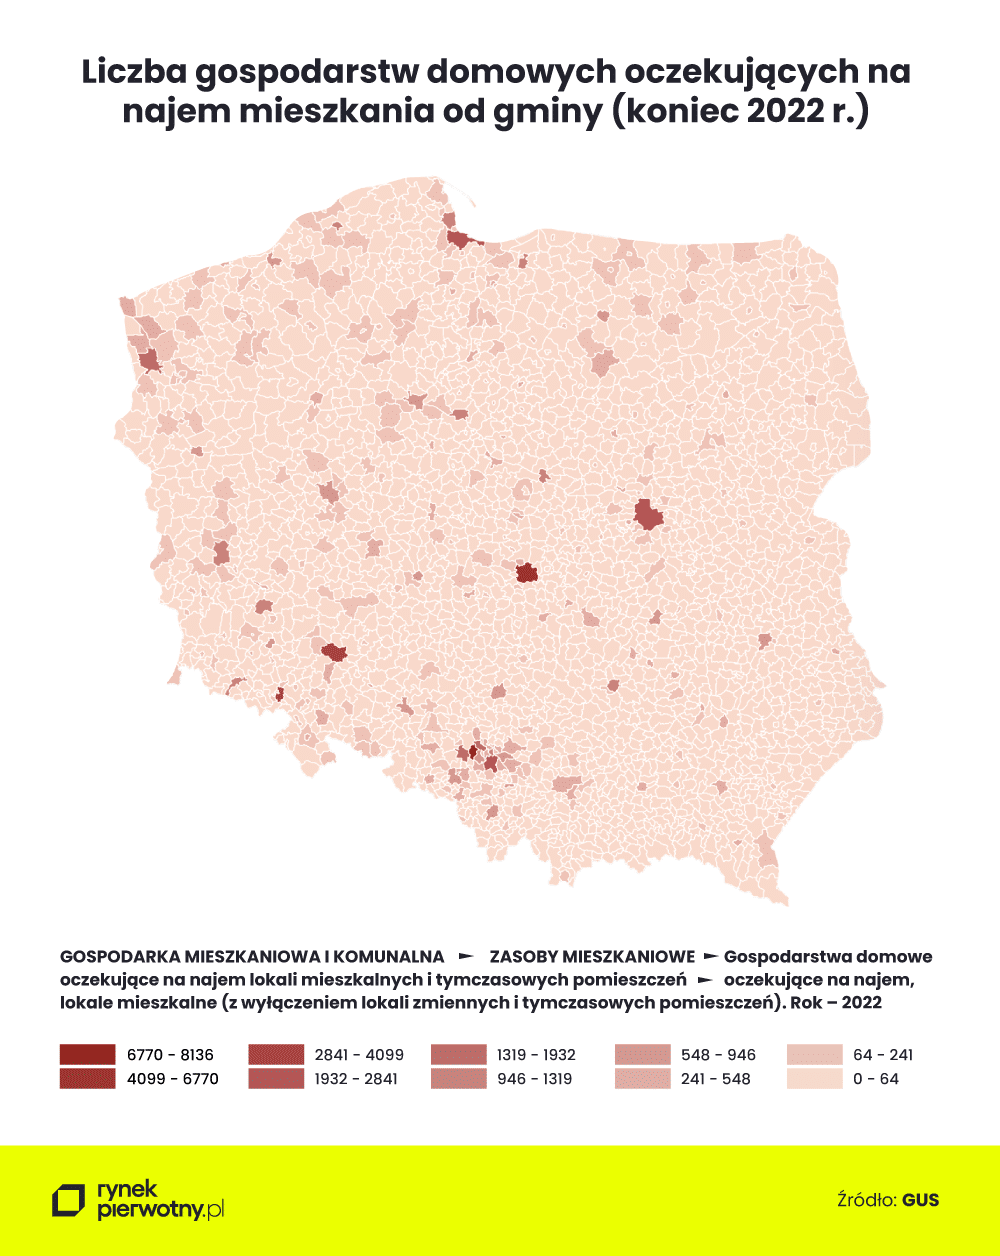 Długie kolejki po mieszkanie od gminy - mapa dysproporcji w skali Polski
